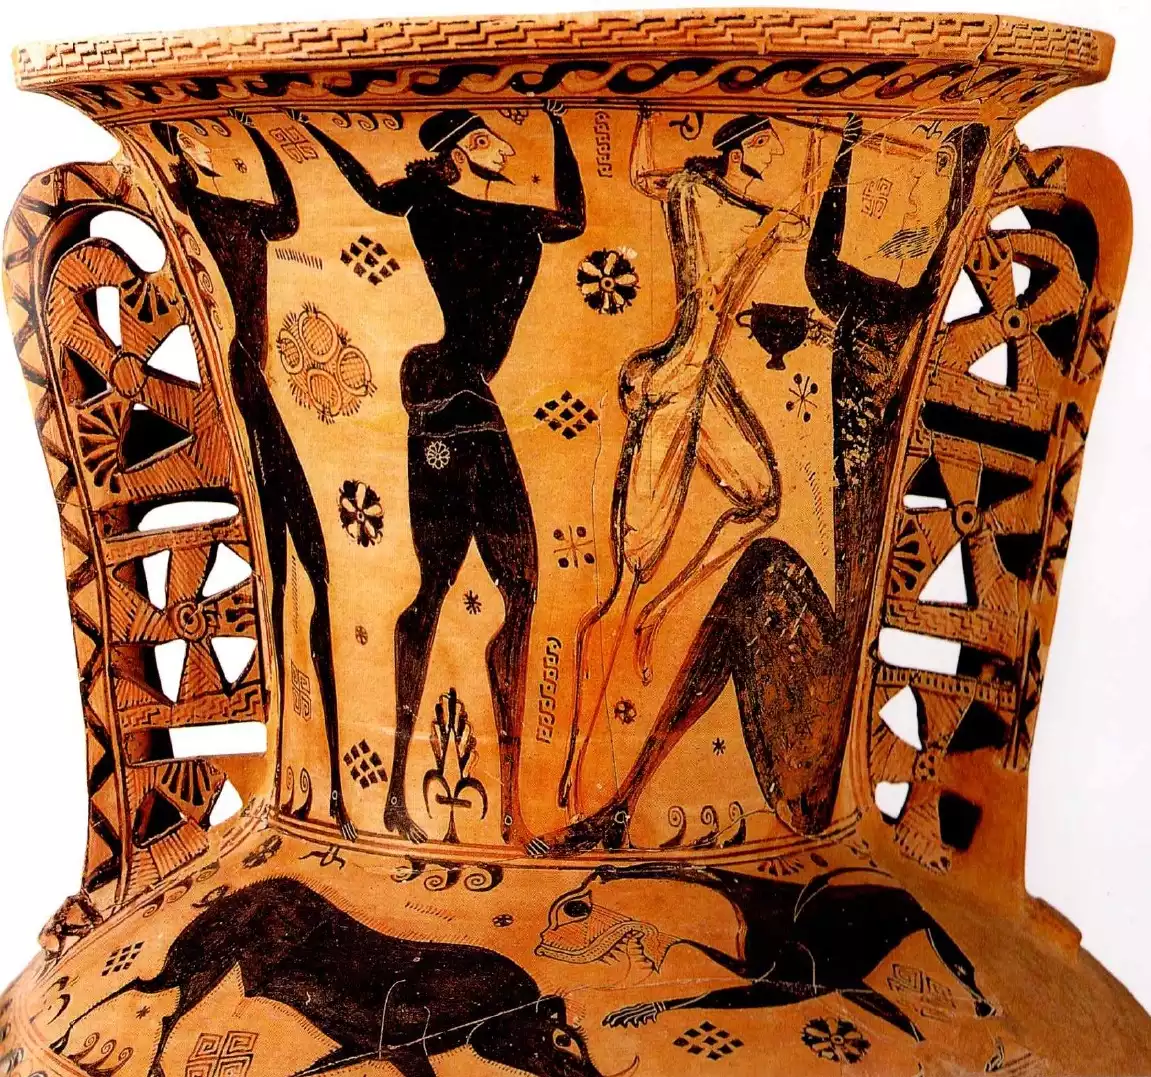 Δοχεία λαδιού - Αρχαίο ελληνικό σκεύος για φύλαξη λαδιού, γεωμετρικής περιόδου, 650 π.Χ.